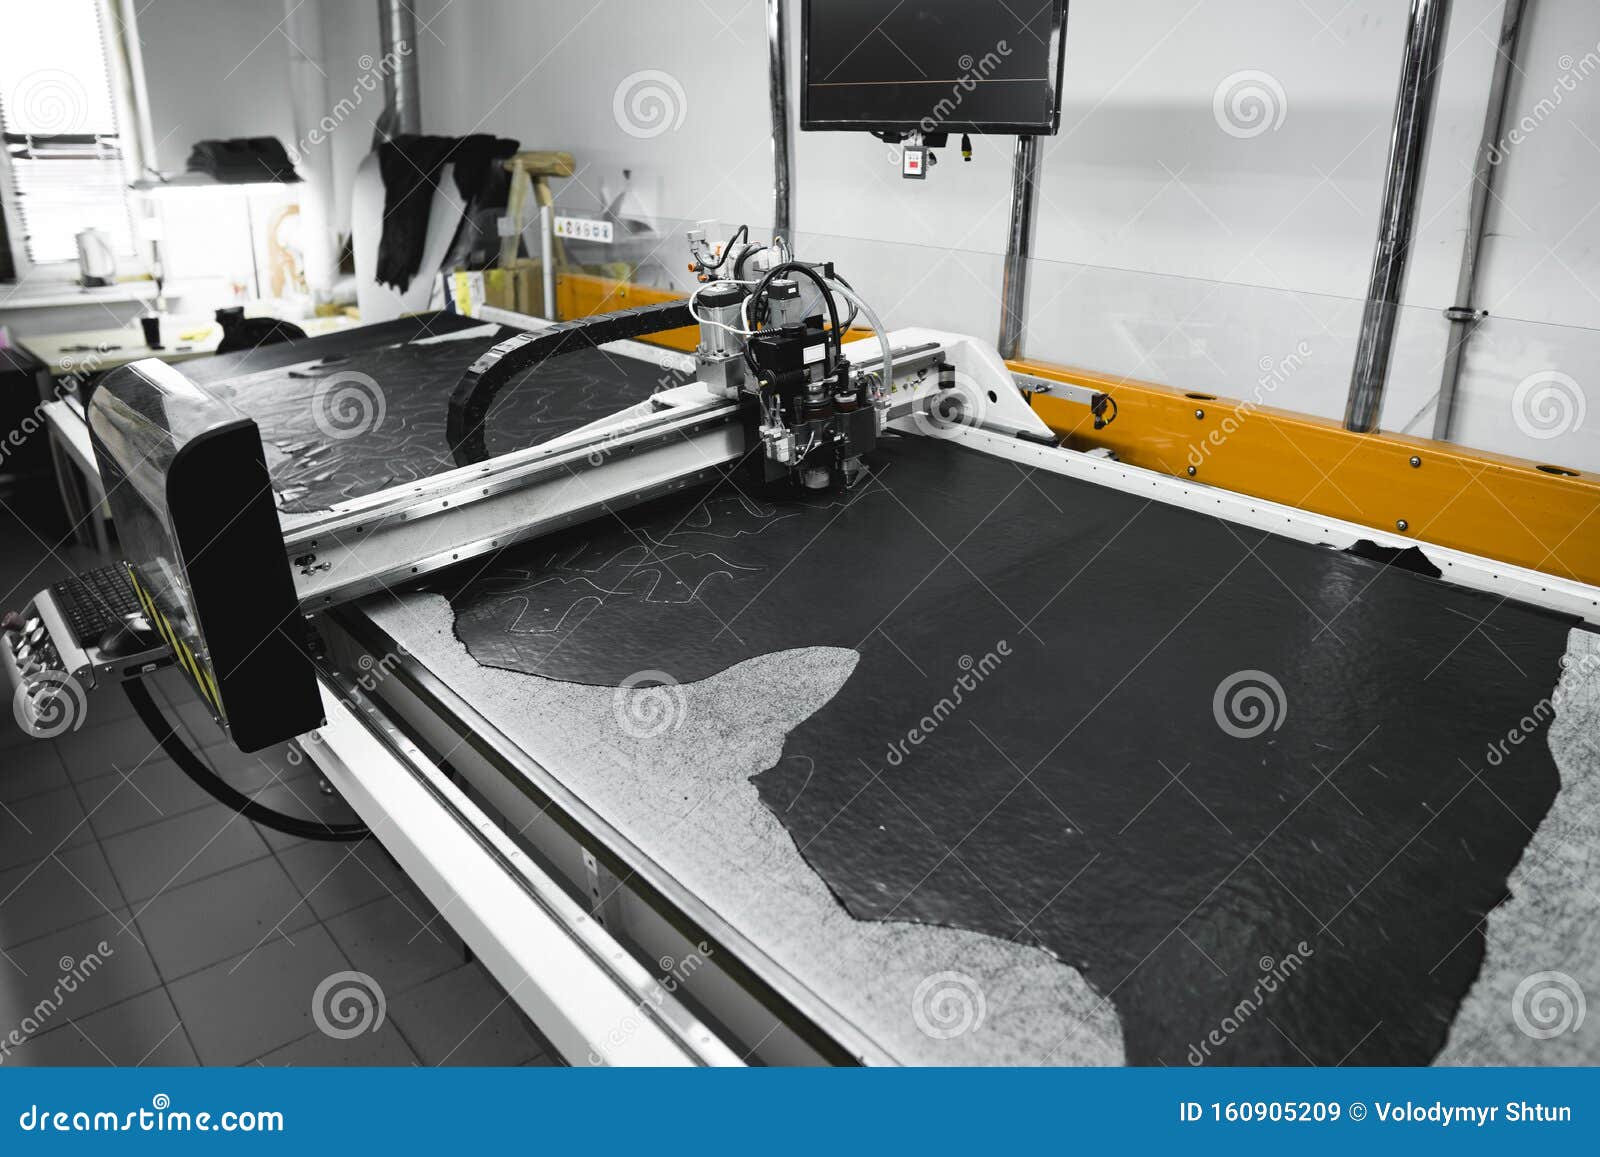 Máquina CNC Para Corte De Telas Y De Cuero Producción Moderna De Calzado  Multicapa Industrial Imagen de archivo - Imagen de industrial, corte:  160905209